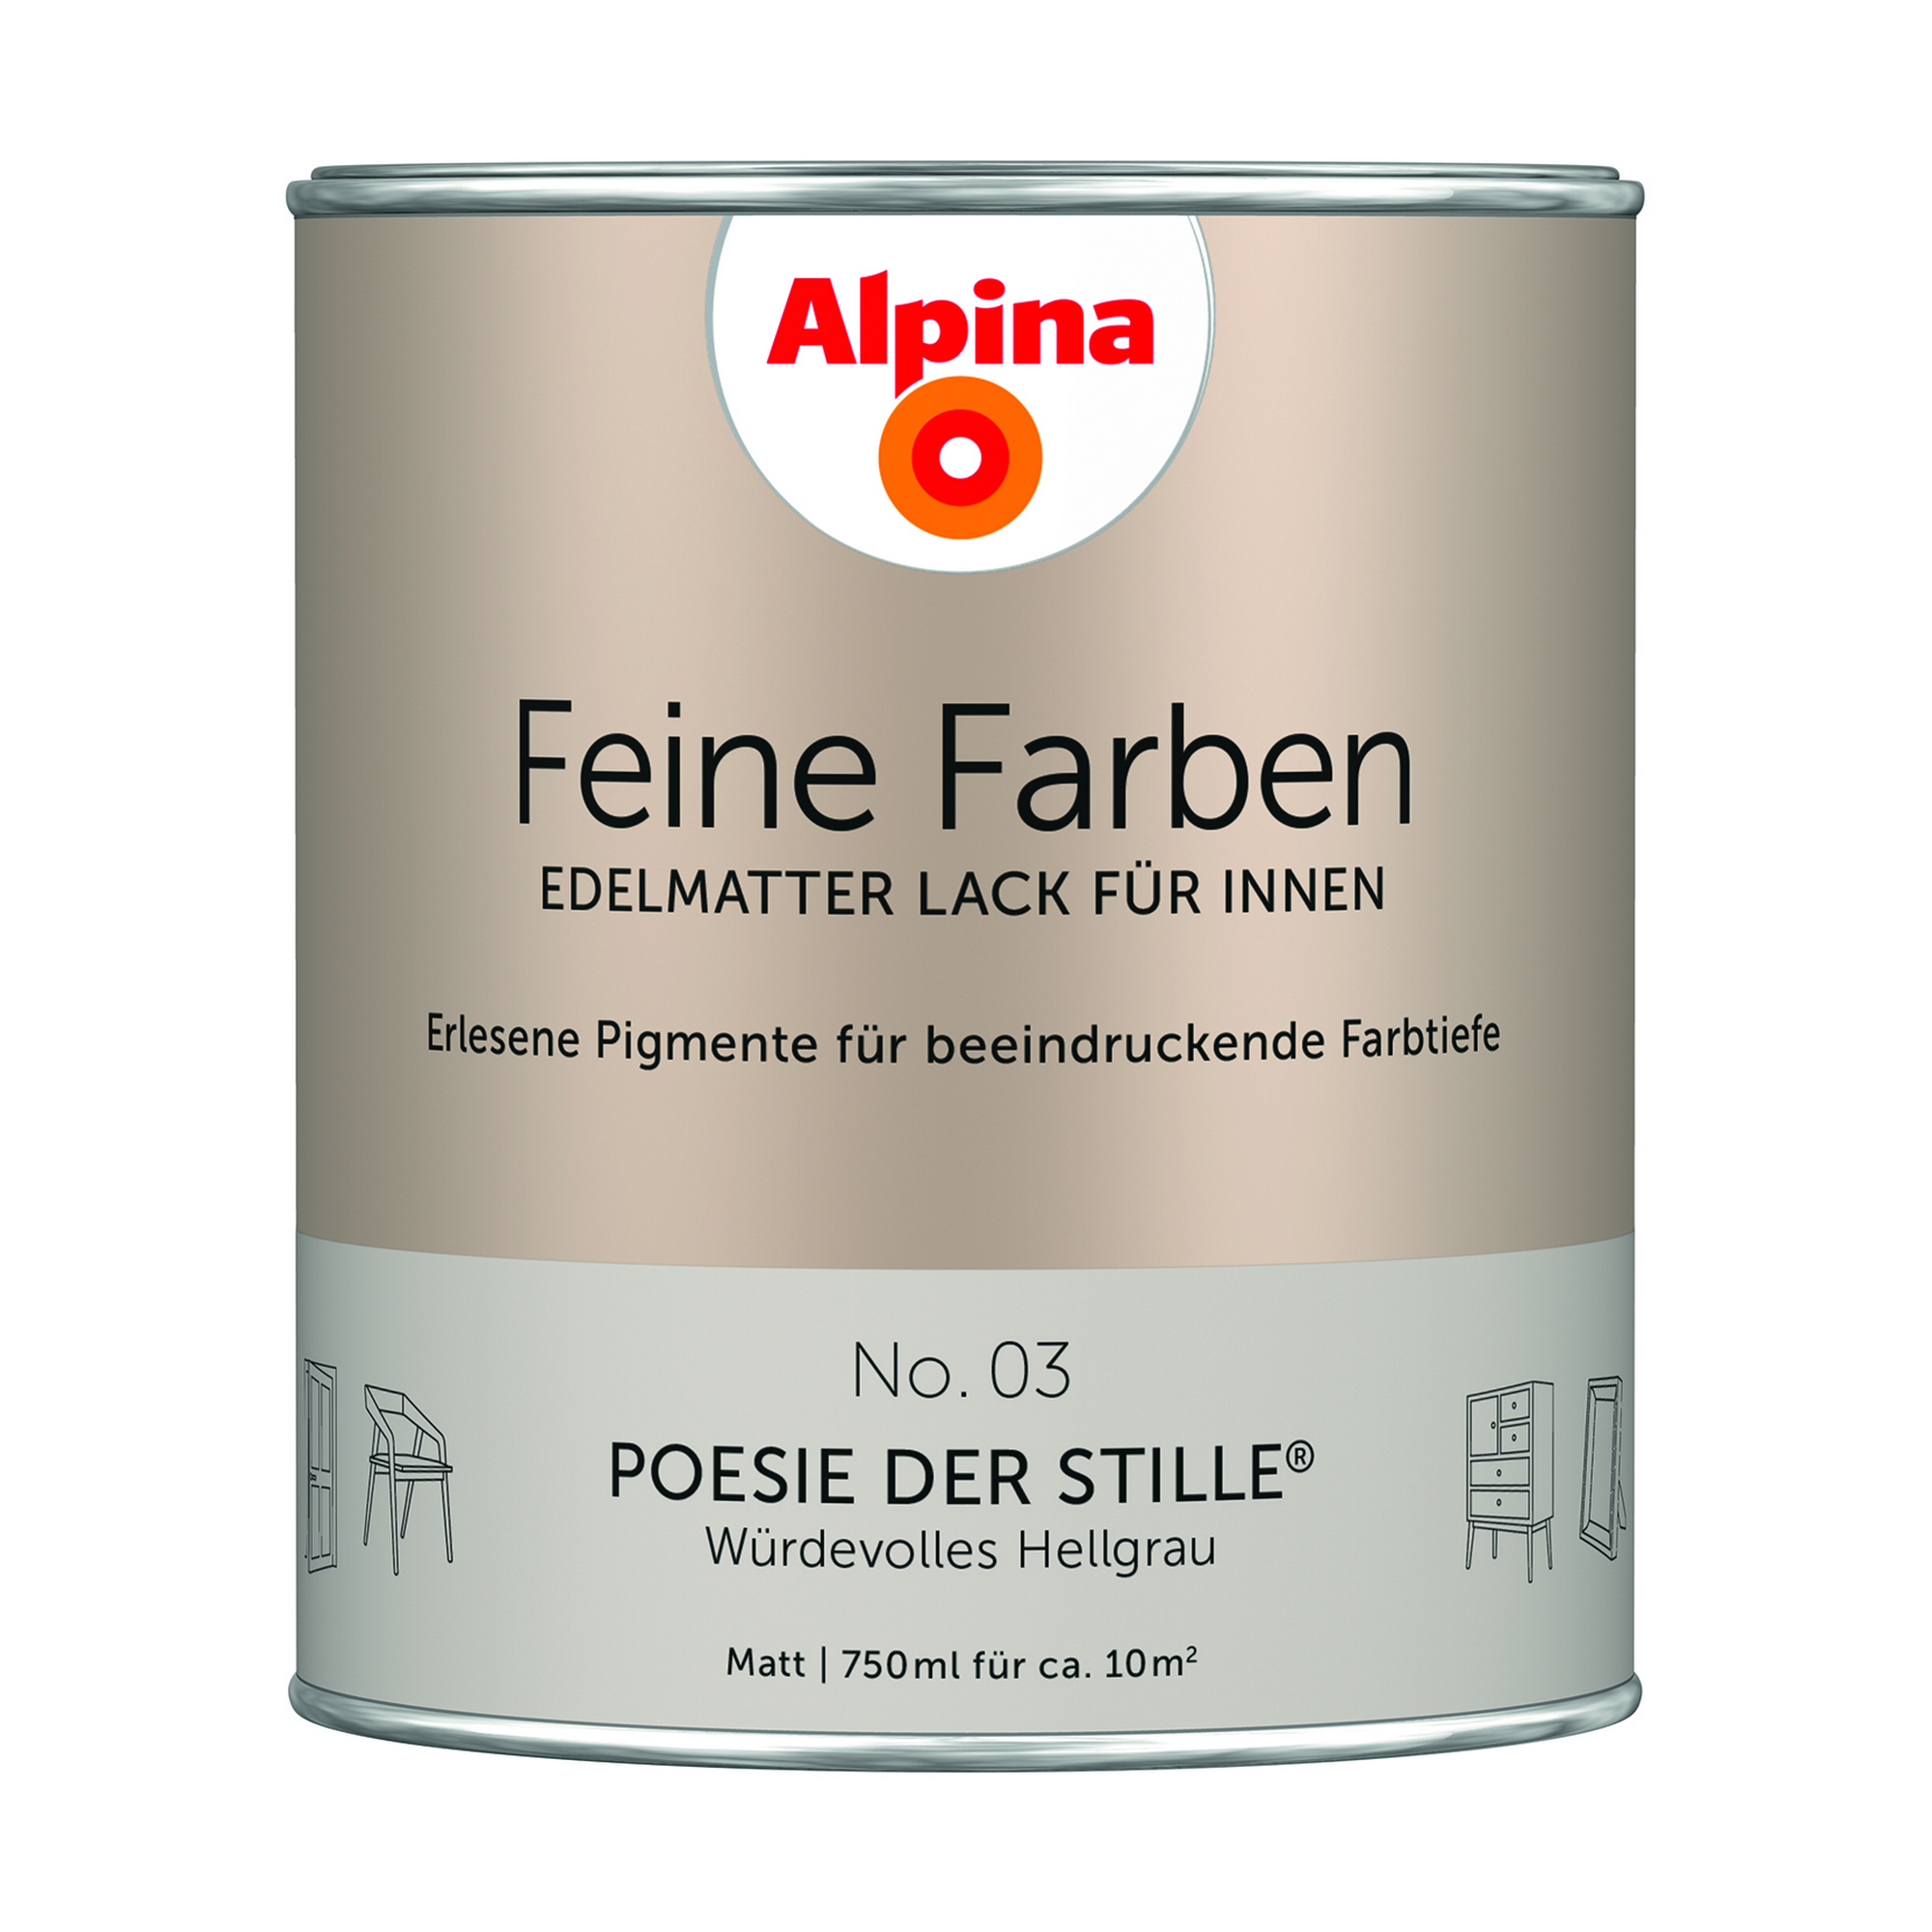 Feine Farben 'Poesie der Stille' hellgrau matt 750 ml + product picture